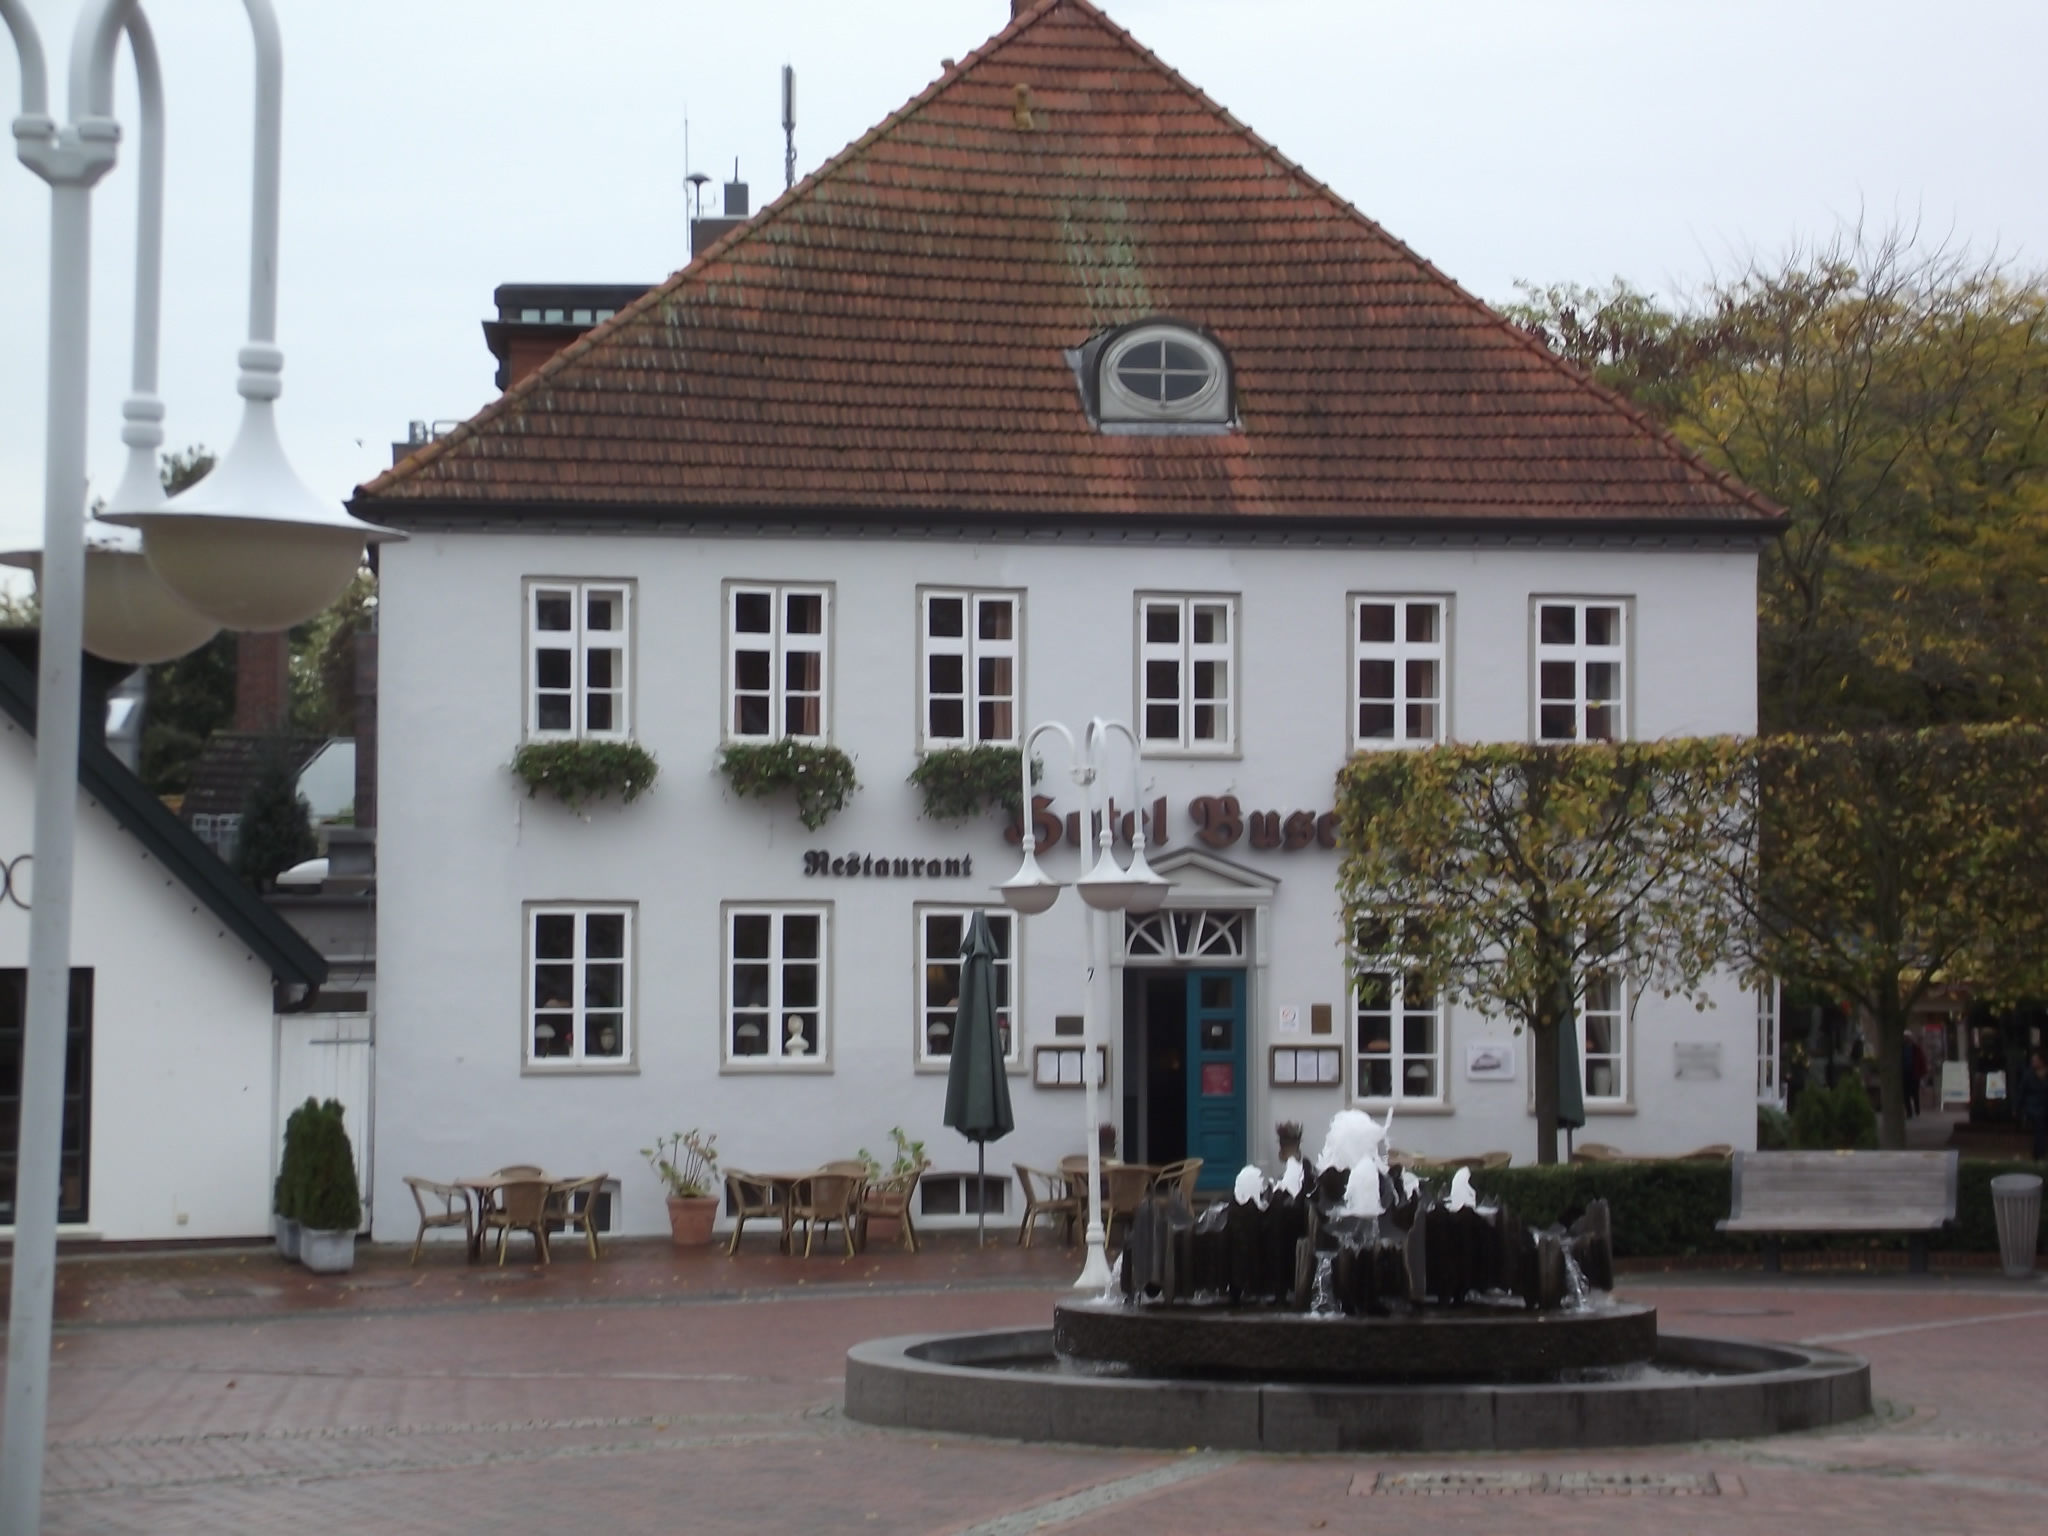 Bild 5 Hotel Busch Restaurant Alter Markt in Westerstede